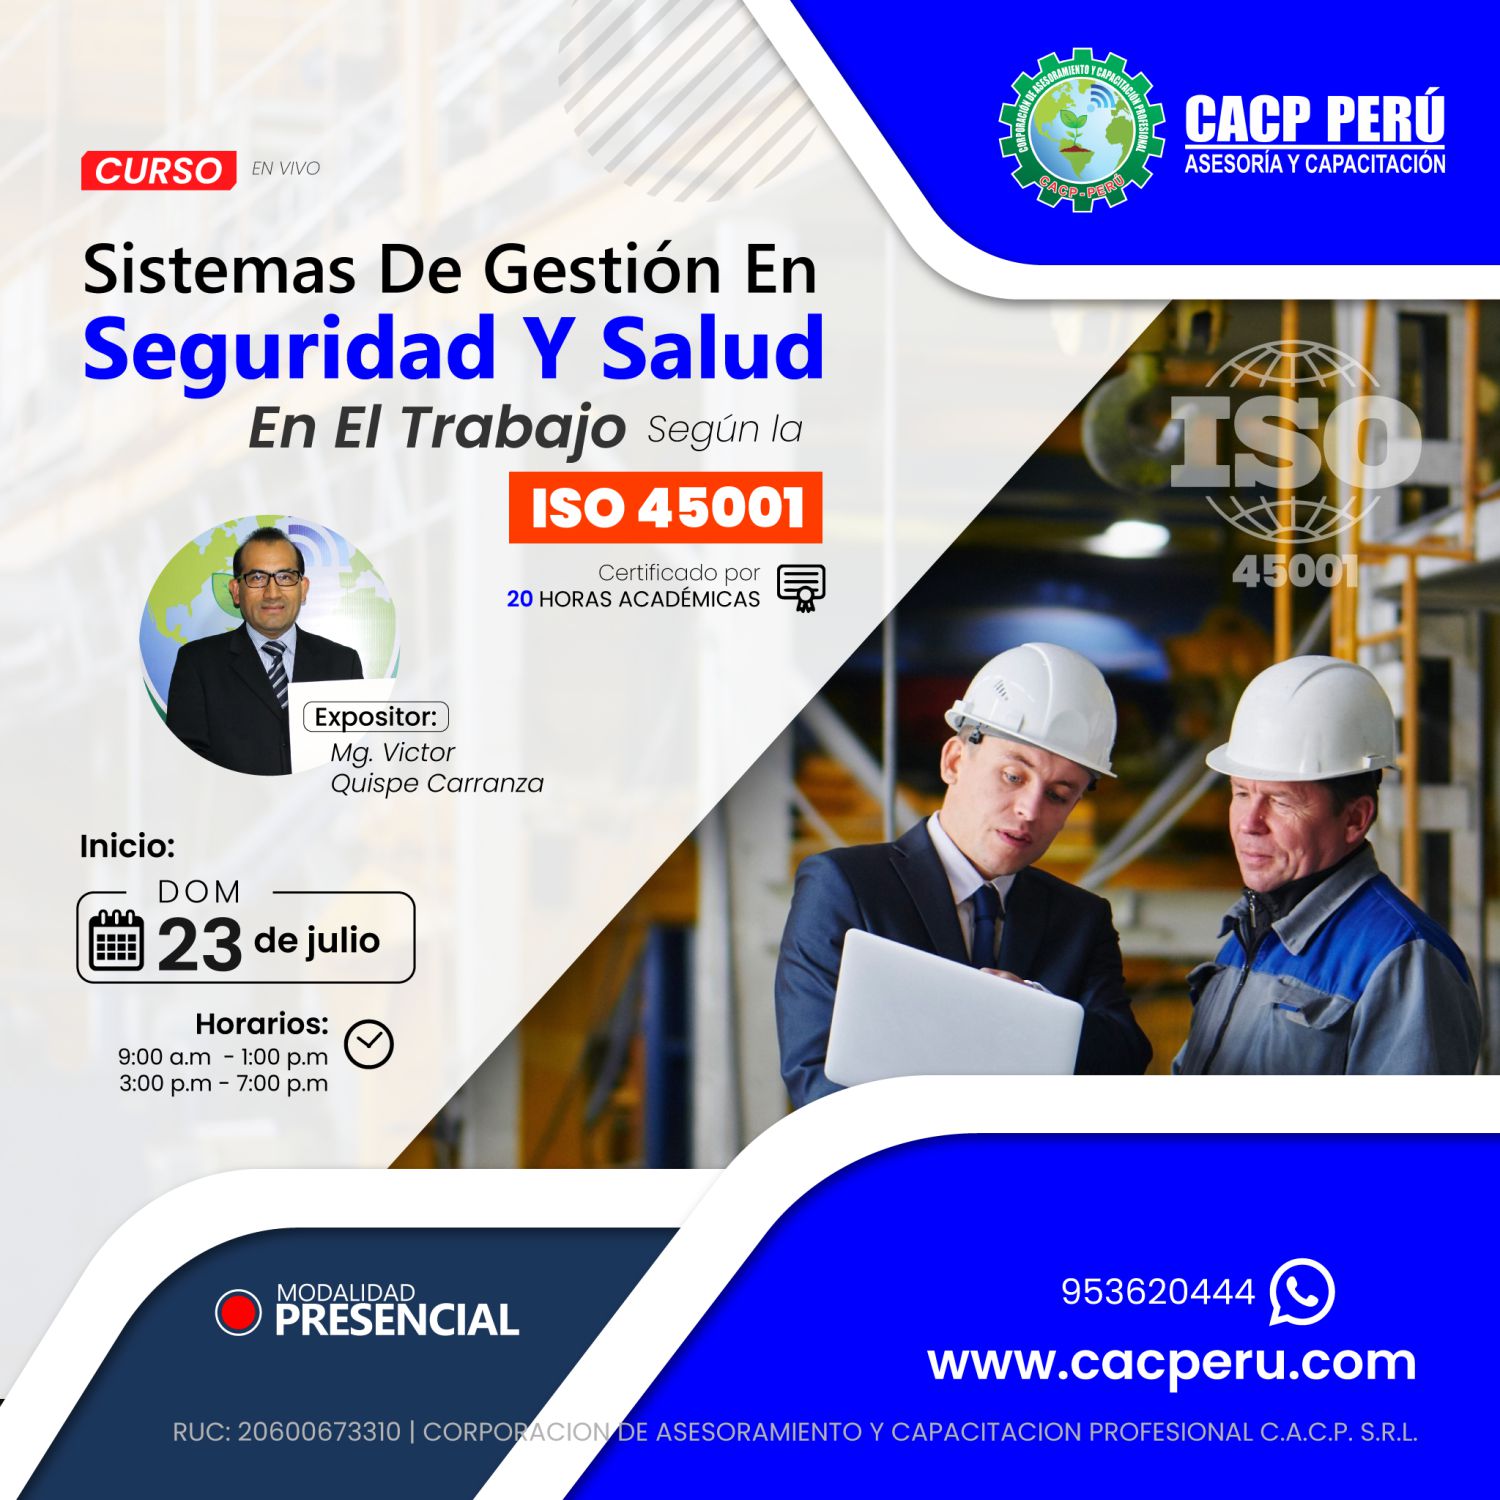 CACP Perú Curso Sistemas De Gestión En Seguridad Y Salud En El Trabajo Segun La Iso